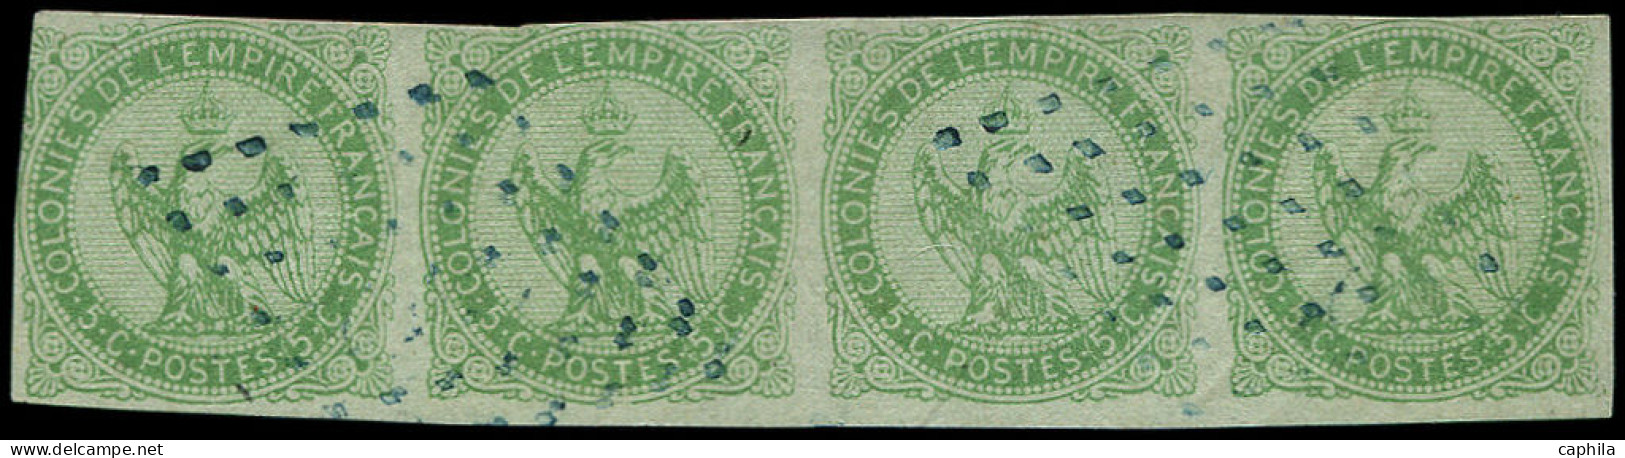 O COLONIES GENERALES - Poste - 2, Bande De 4 Losange Muet Bleu 49pts, Signé Thiaude, 1 Exemplaire Court (Maury): 5c. Ver - Eagle And Crown